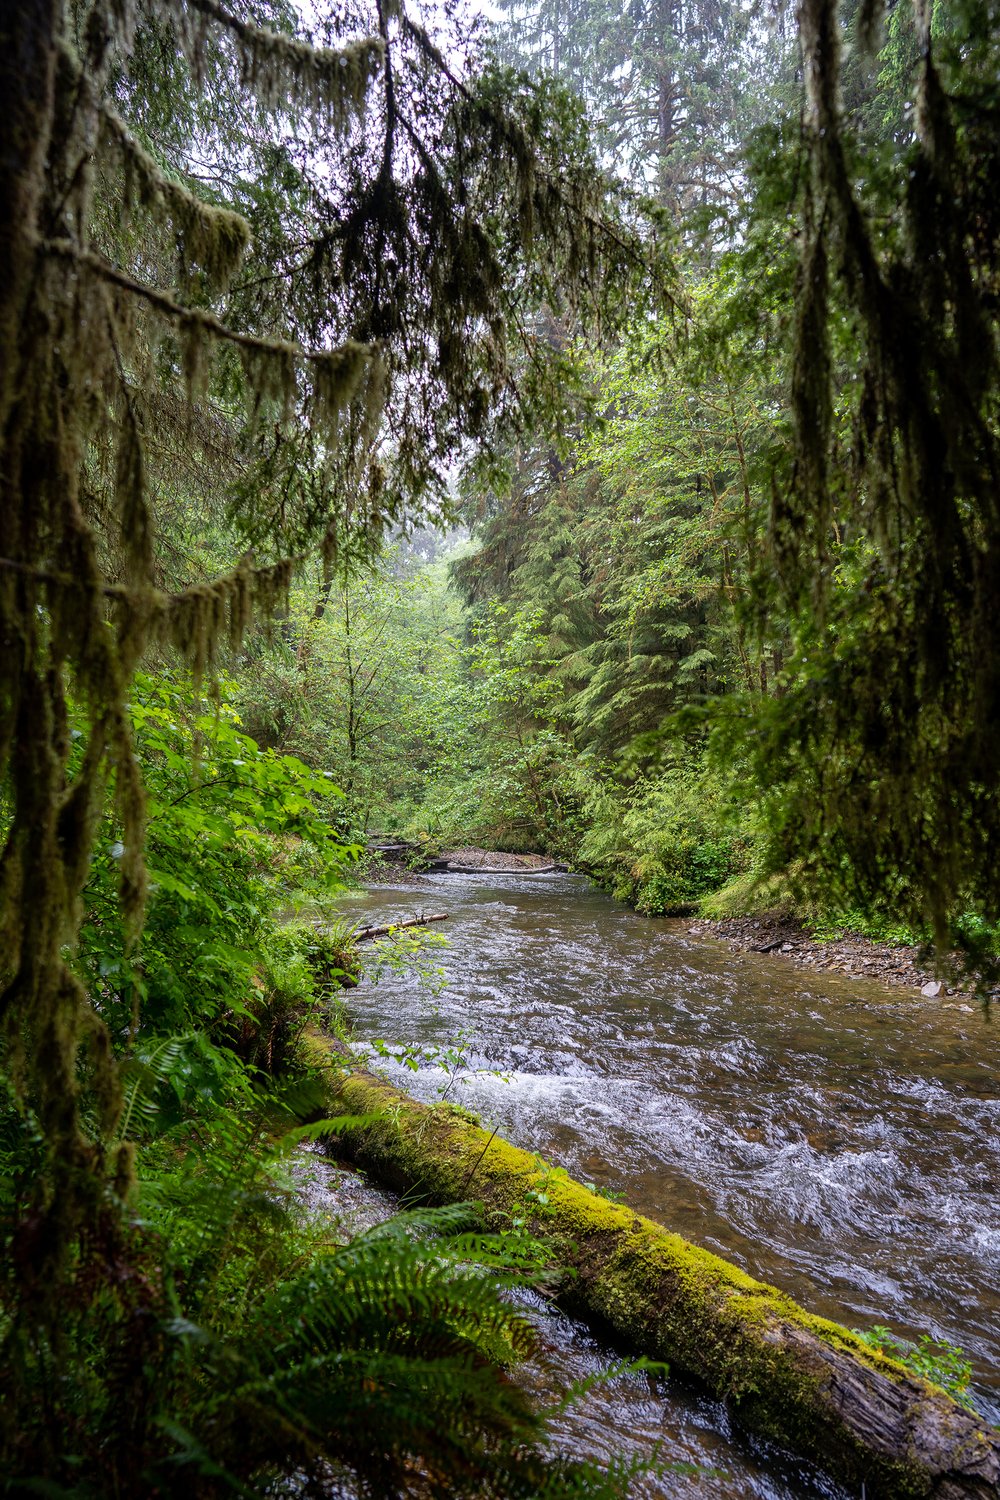 Una foto de Ellsworth Creek fluyendo a través de los árboles de la selva tropical, como el abeto de Sitka.